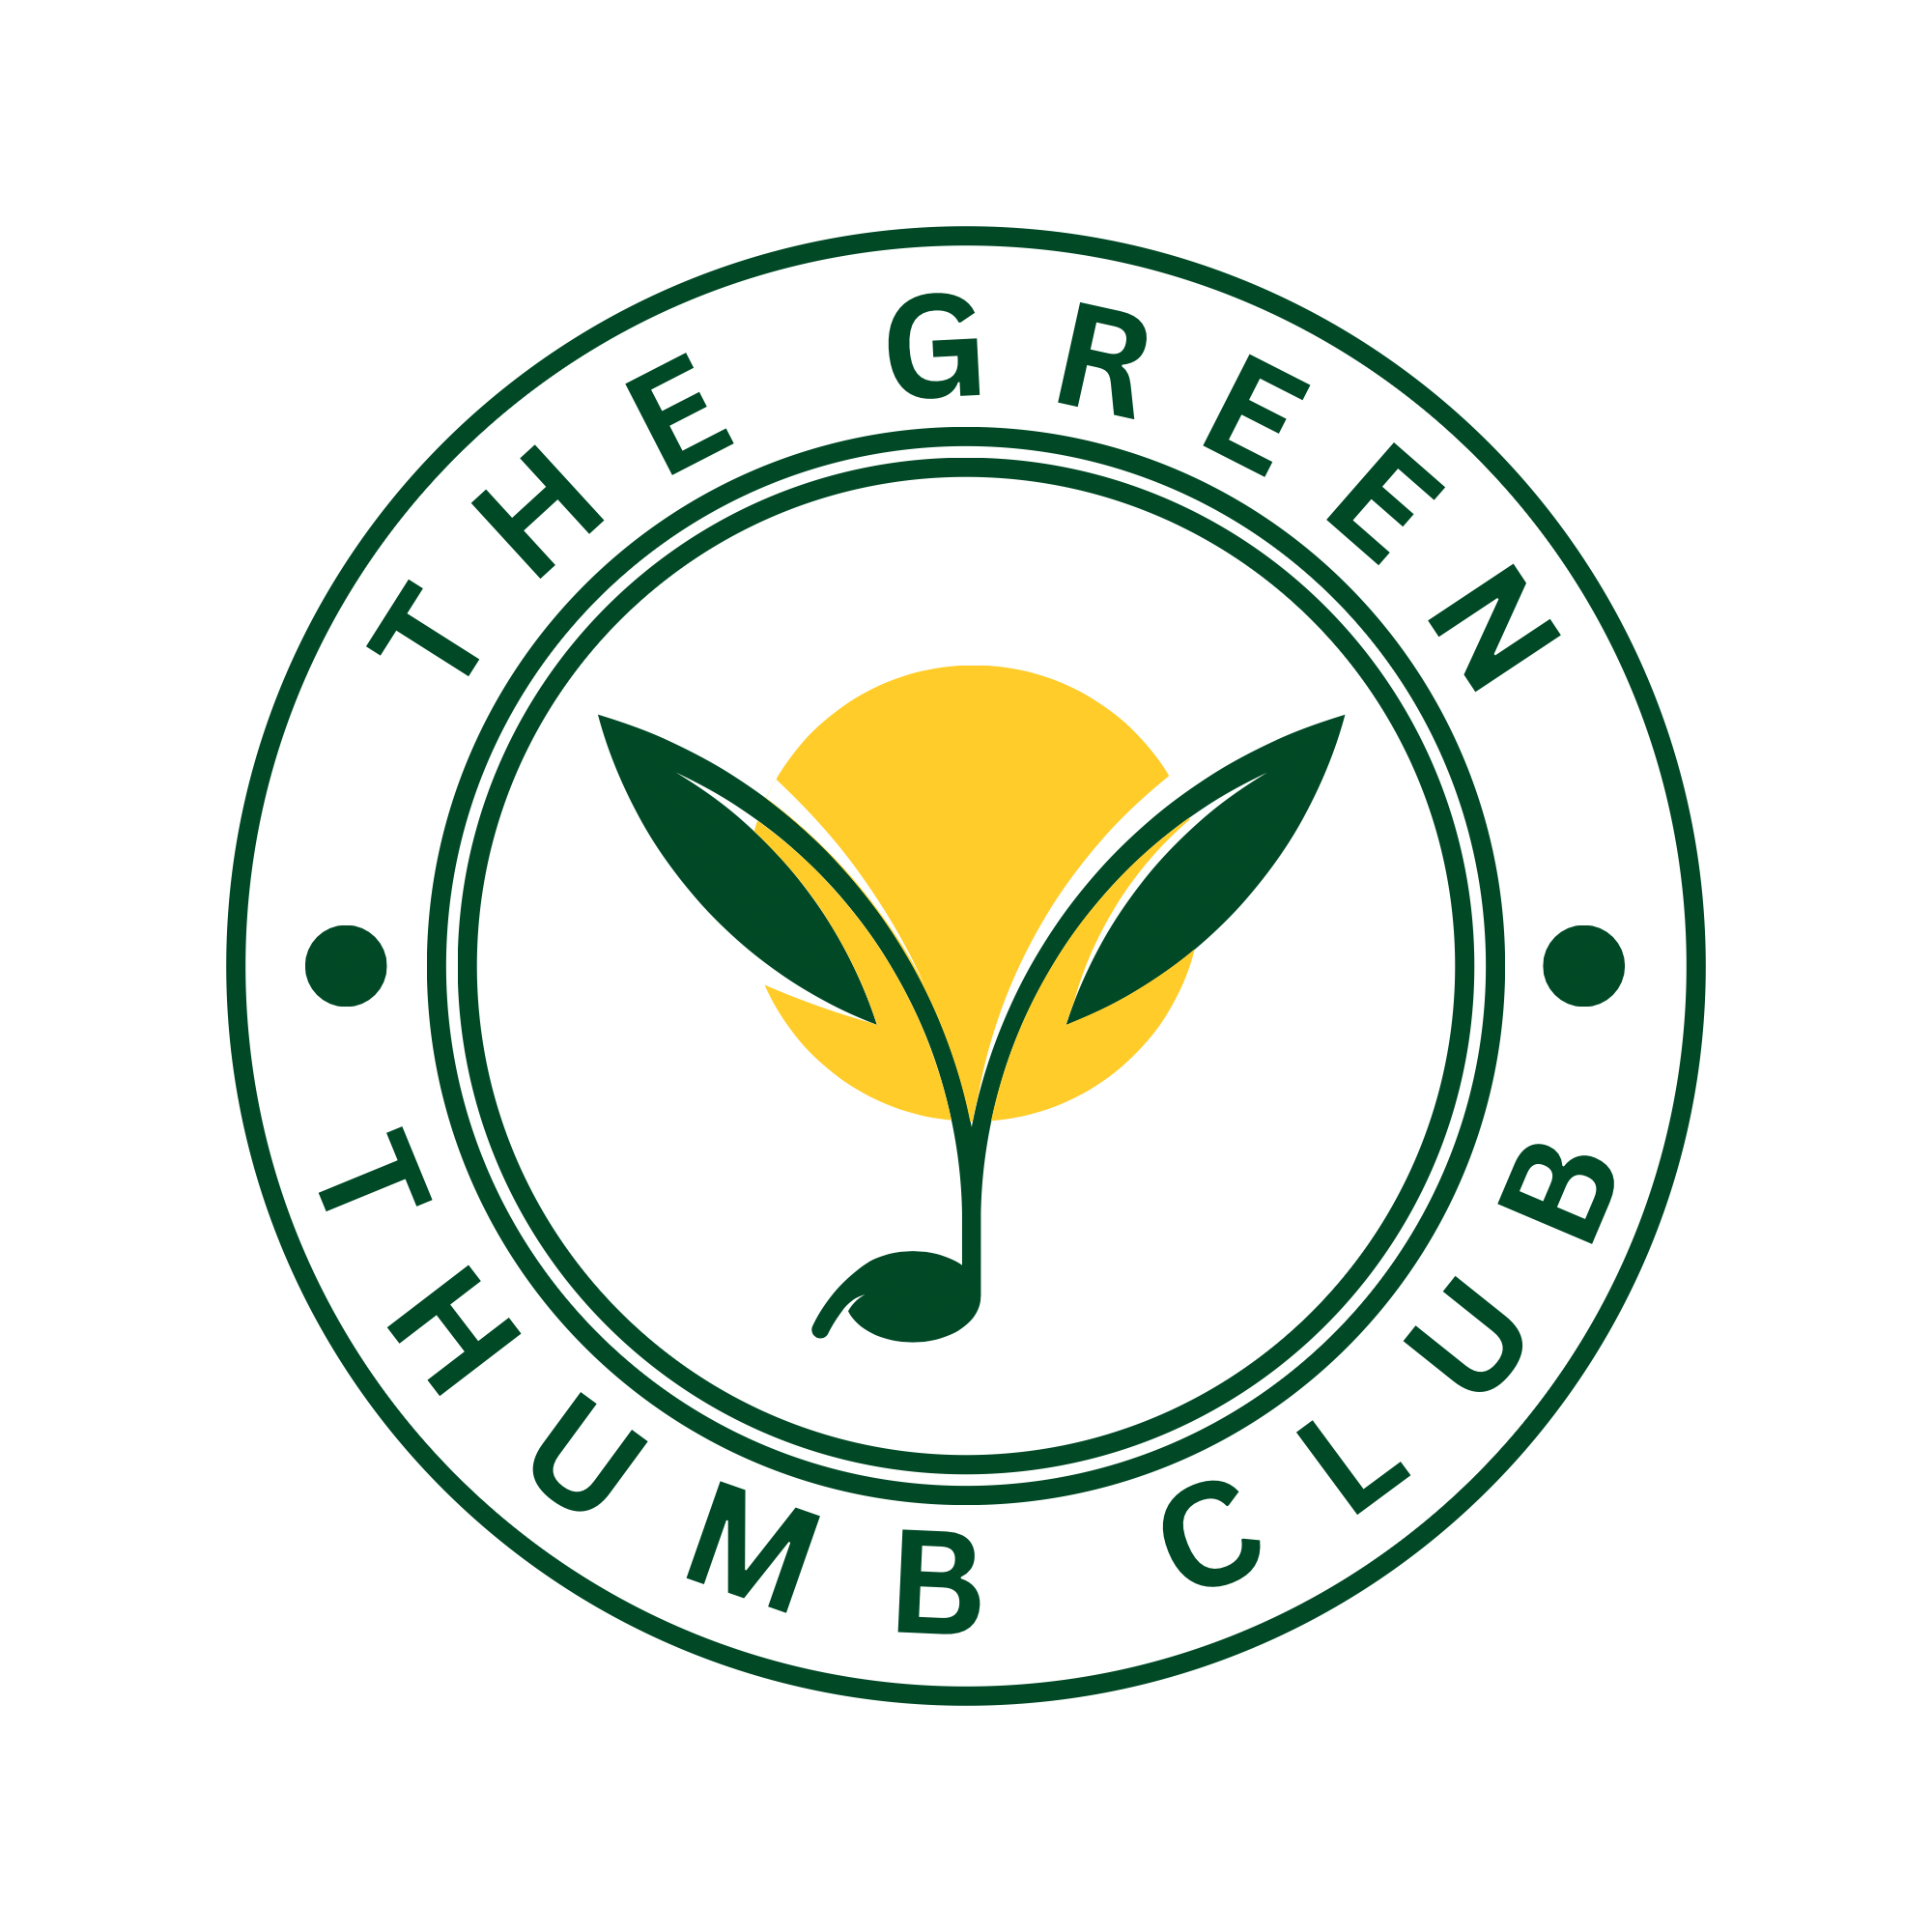 The Green Thumb Club